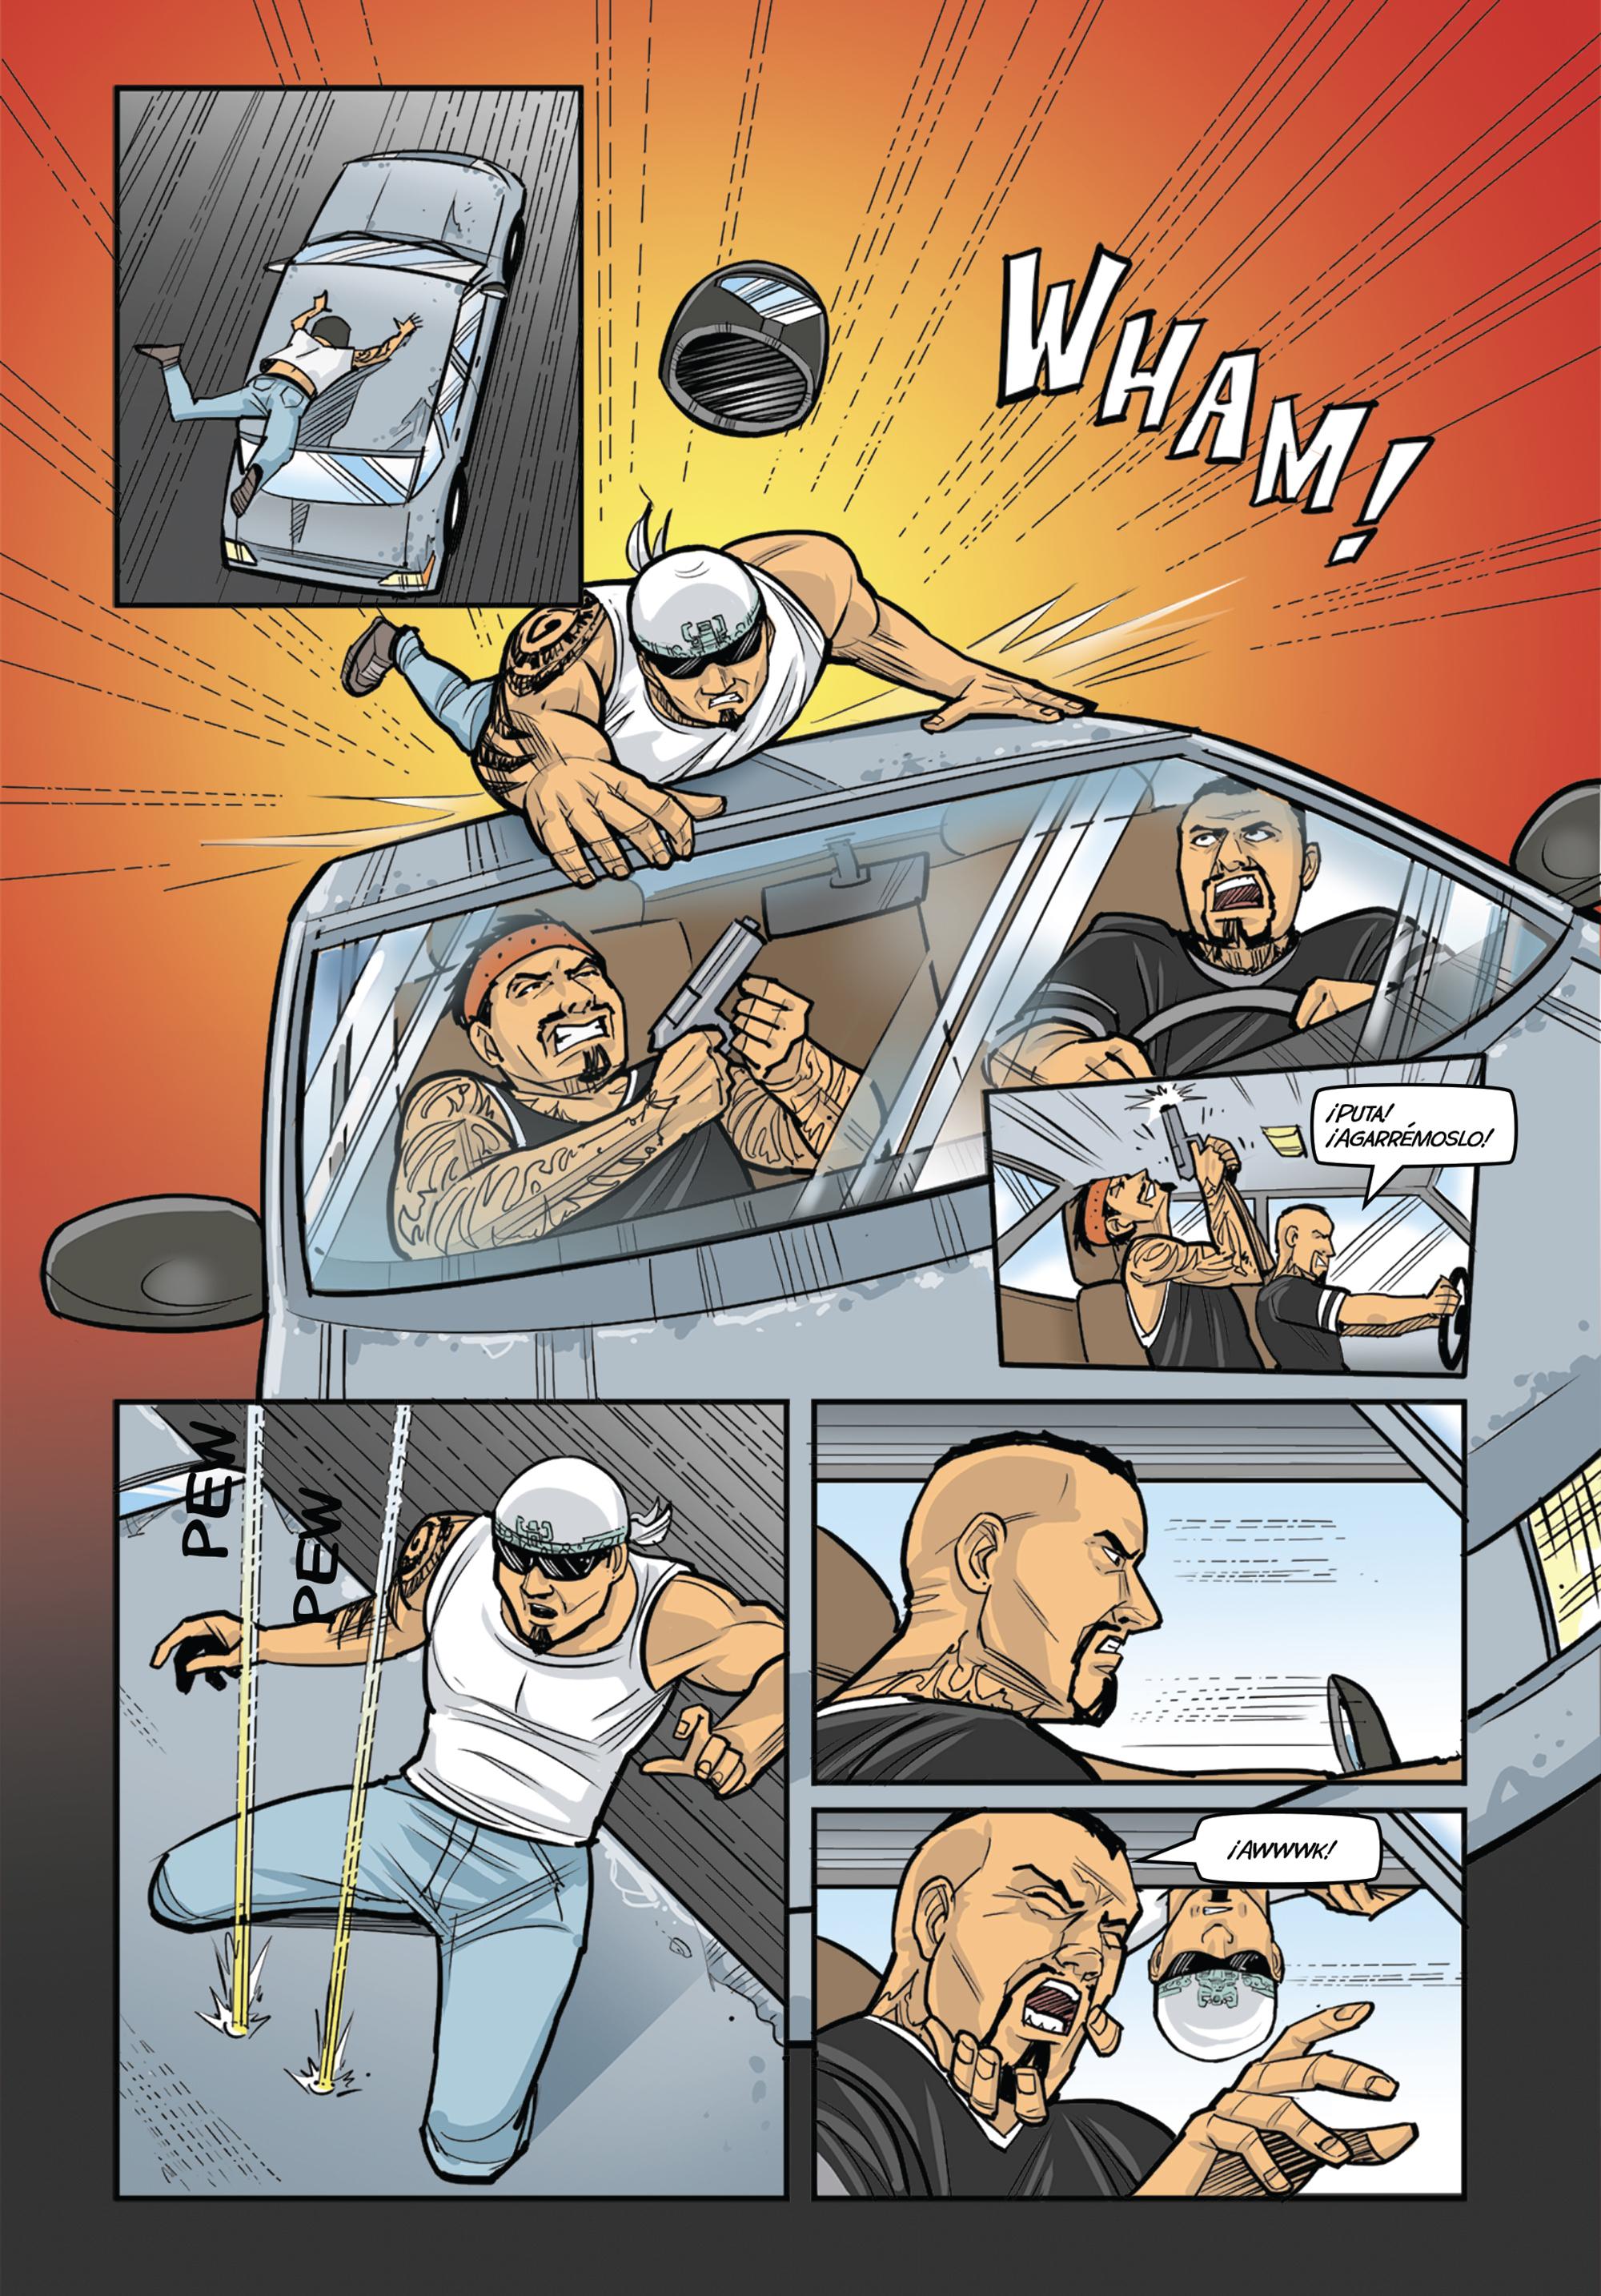 Un expandillero redimido en superhéroe combate a las pandillas. Esa es la trama principal del cómic Oscuro censurado por la Policía. 